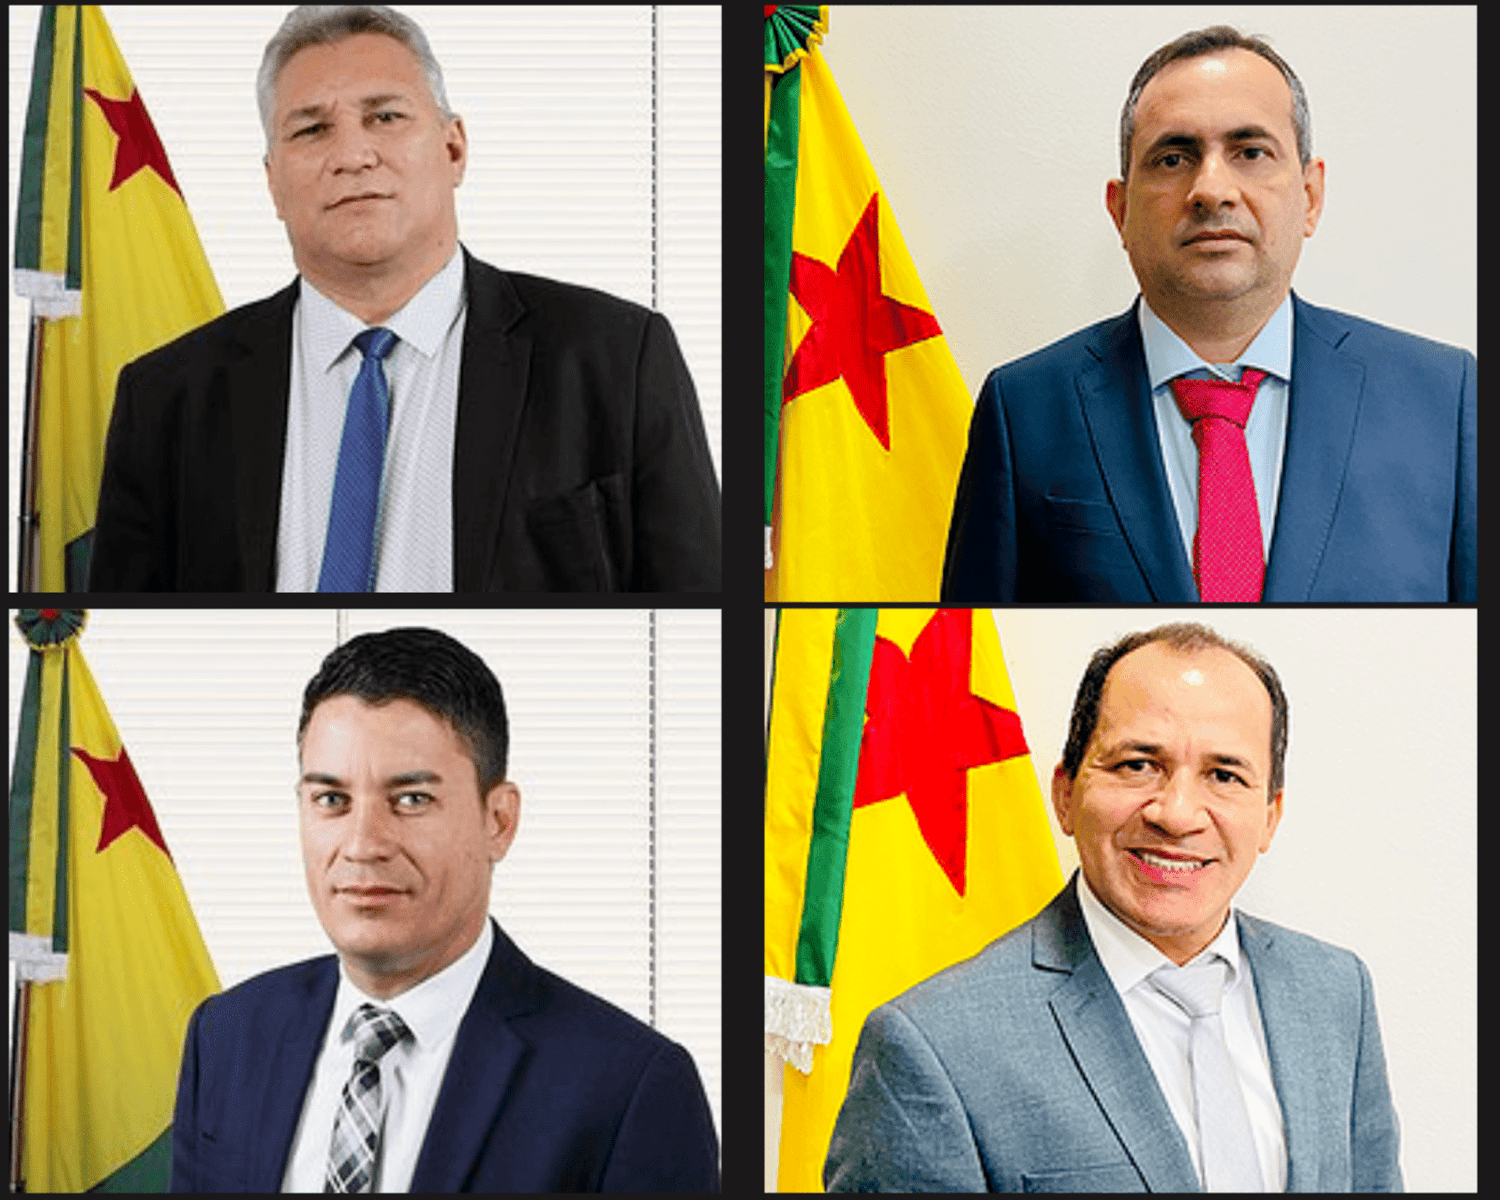 Os vereadores Antônio Morais (PT), Raimundo Neném (PHS), Rutênio Sá (PP) e Raimundo Castro (PSDB) viajam 26/07/2021, e retorno em
31/07/2021.